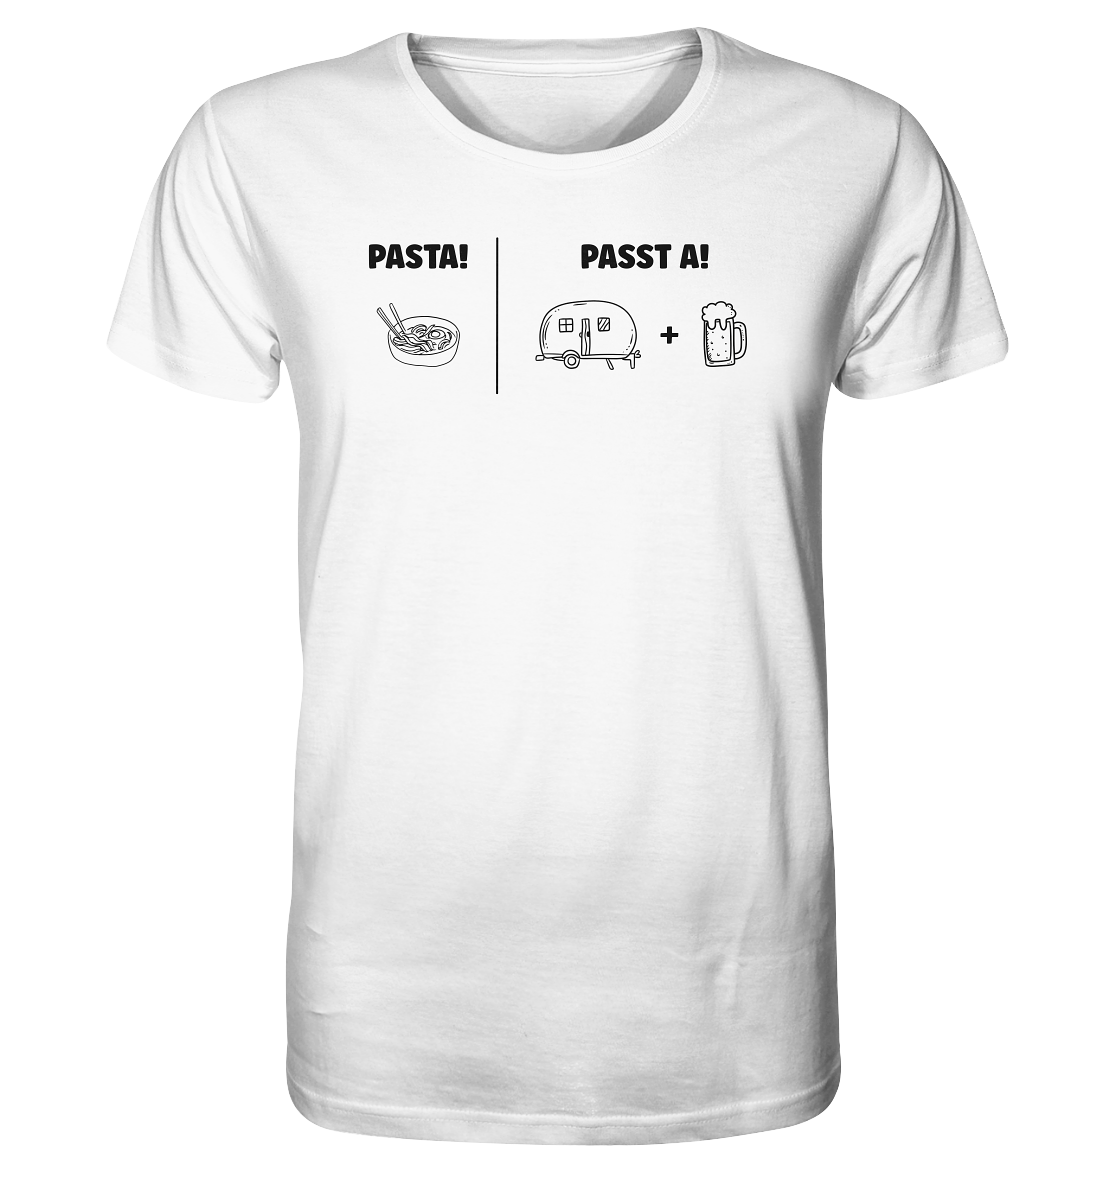 Pasta - Passt A - Organic Shirt